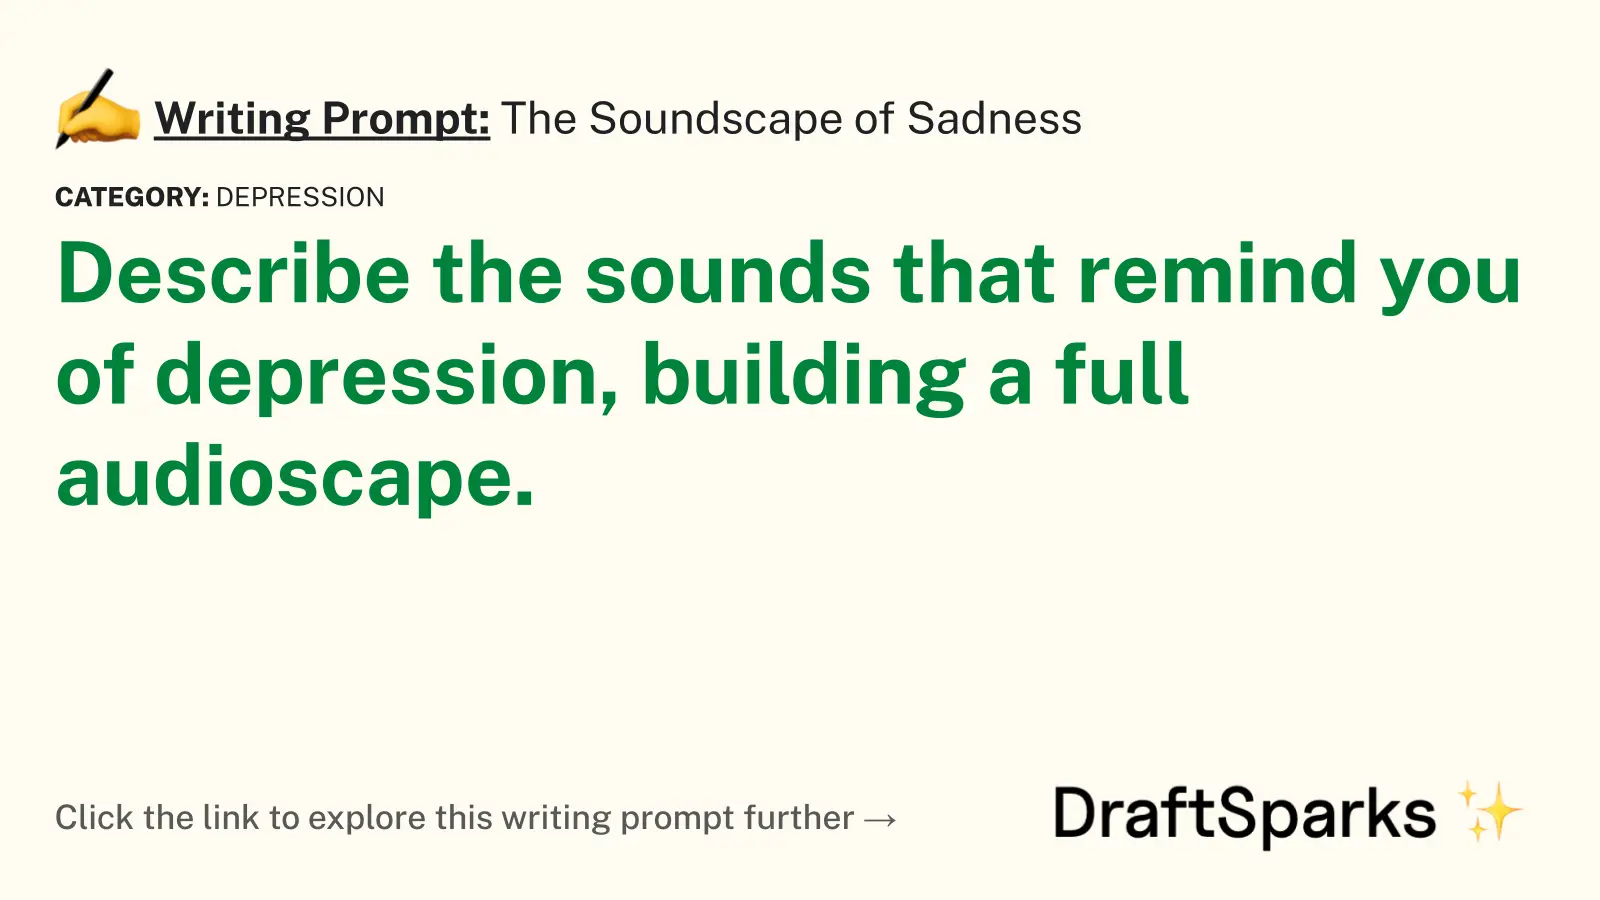 The Soundscape of Sadness